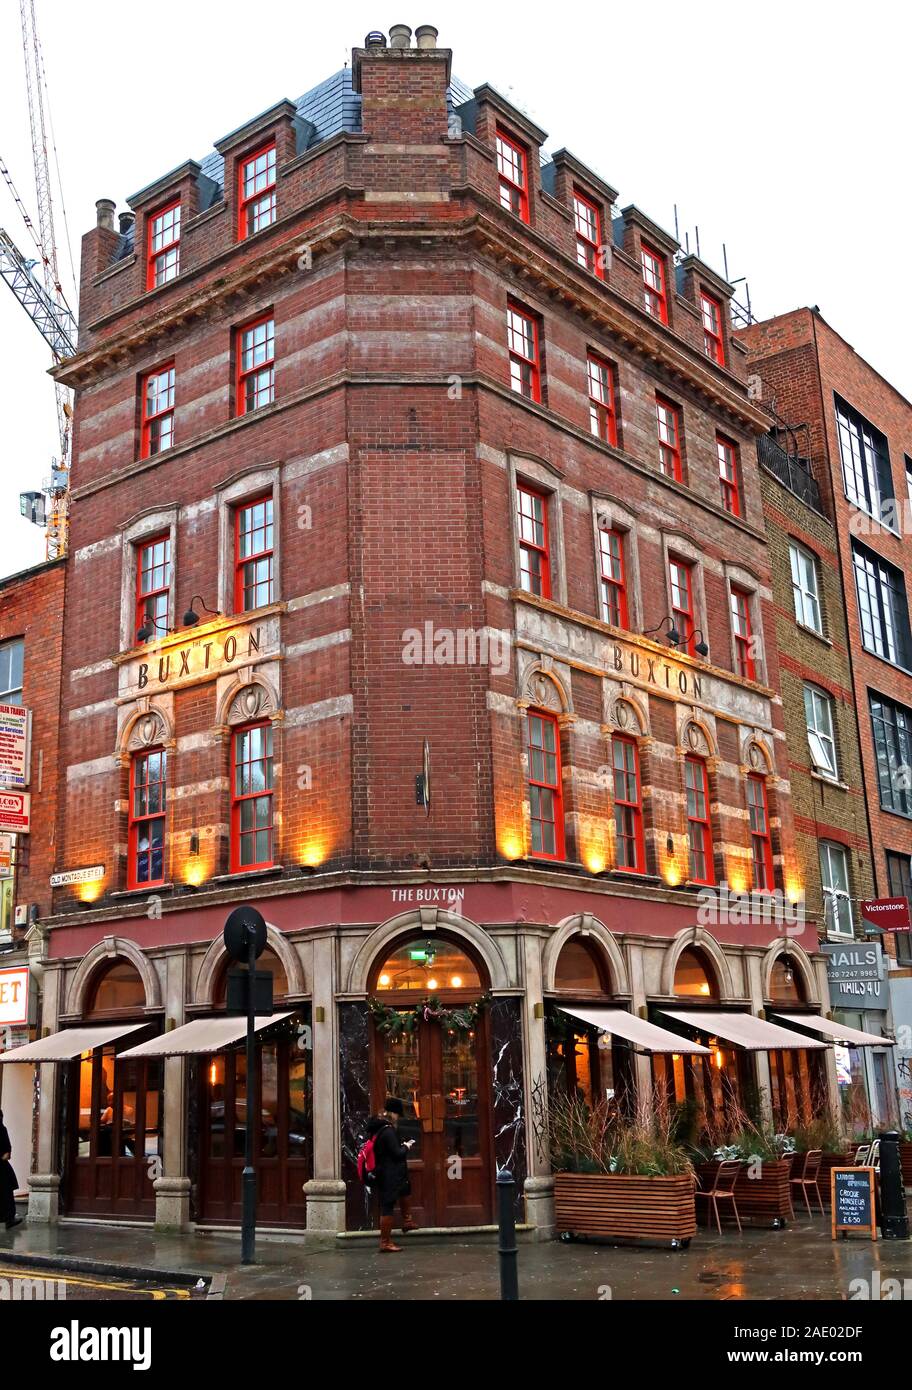 Le pub et hôtel Sir Thomas Buxton, Brick Lane, 42 Osborn Street, Londres E1 6TD Banque D'Images